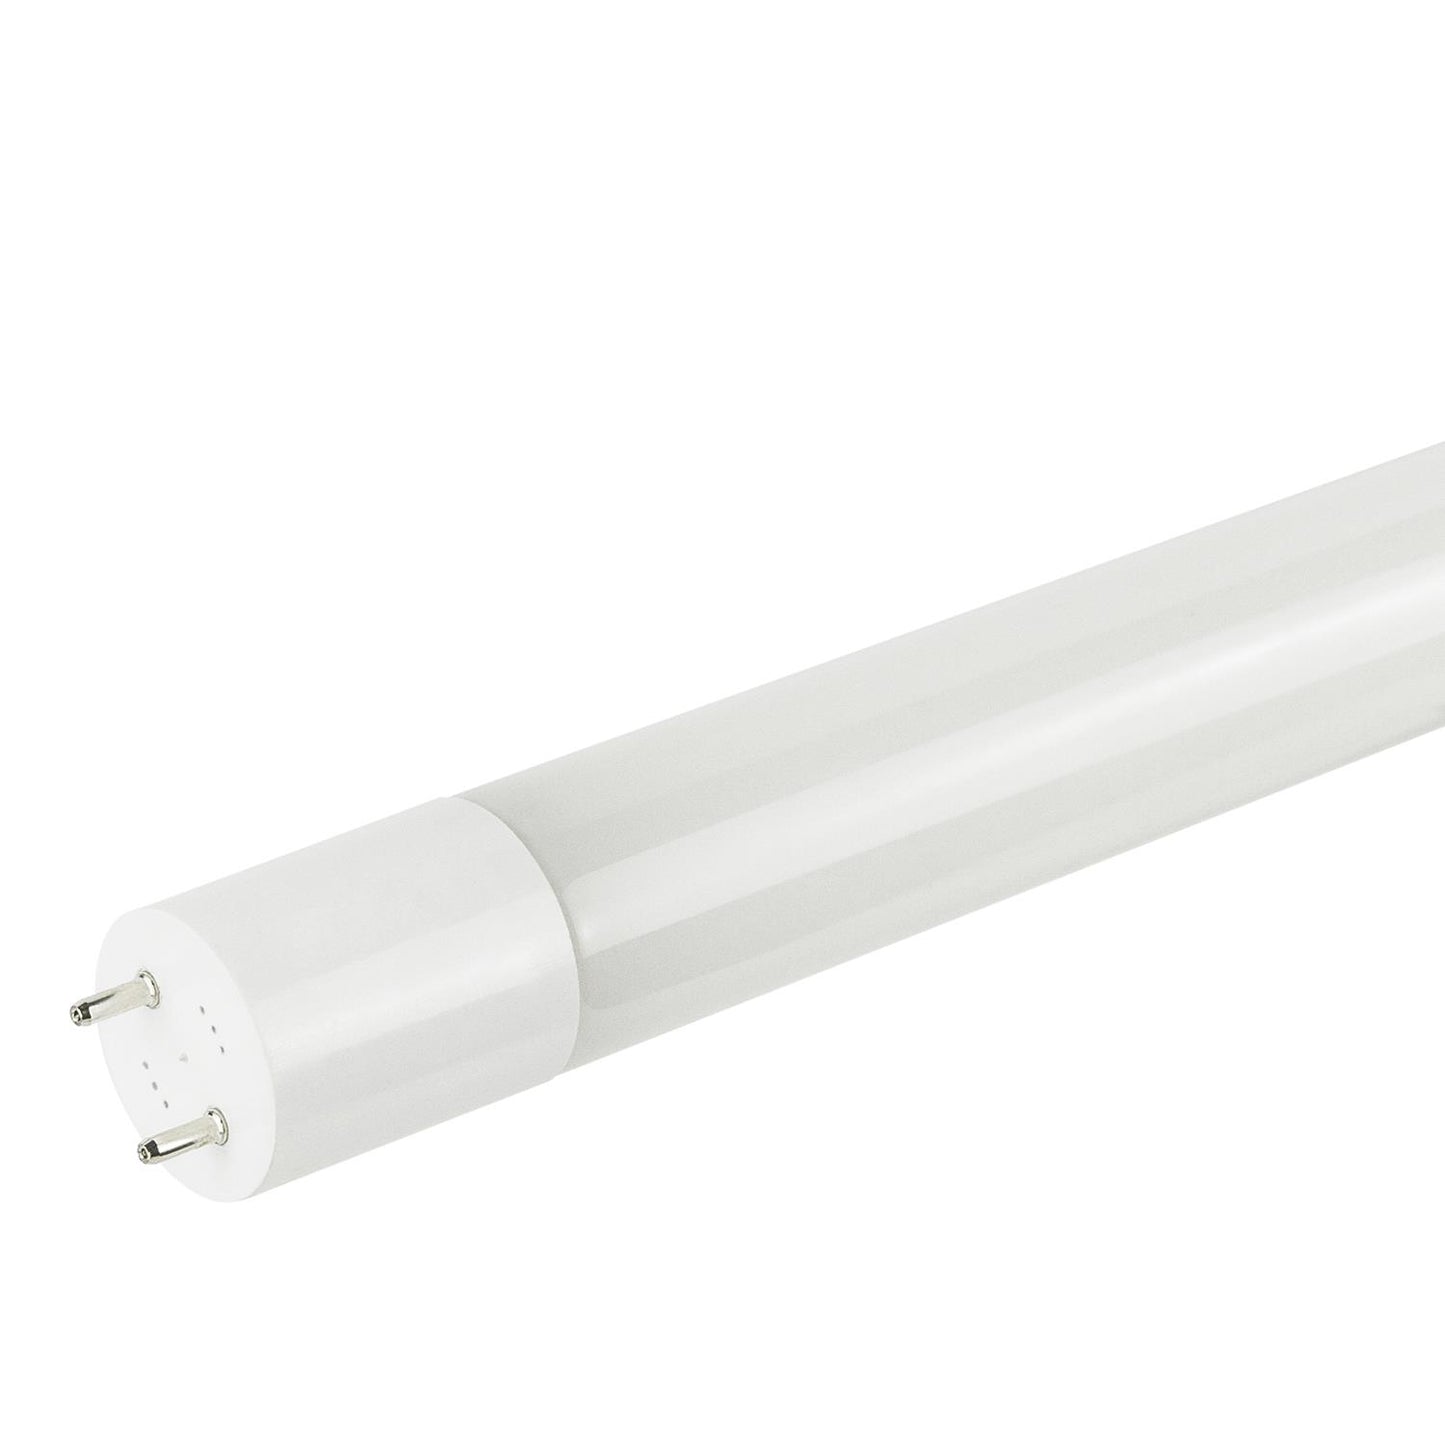 Sunlite T8/LED/IS/4'/12W/35K/PPS 12 Watt T8 Lamp Medium Bi-Pin (G13) Base Neutral White